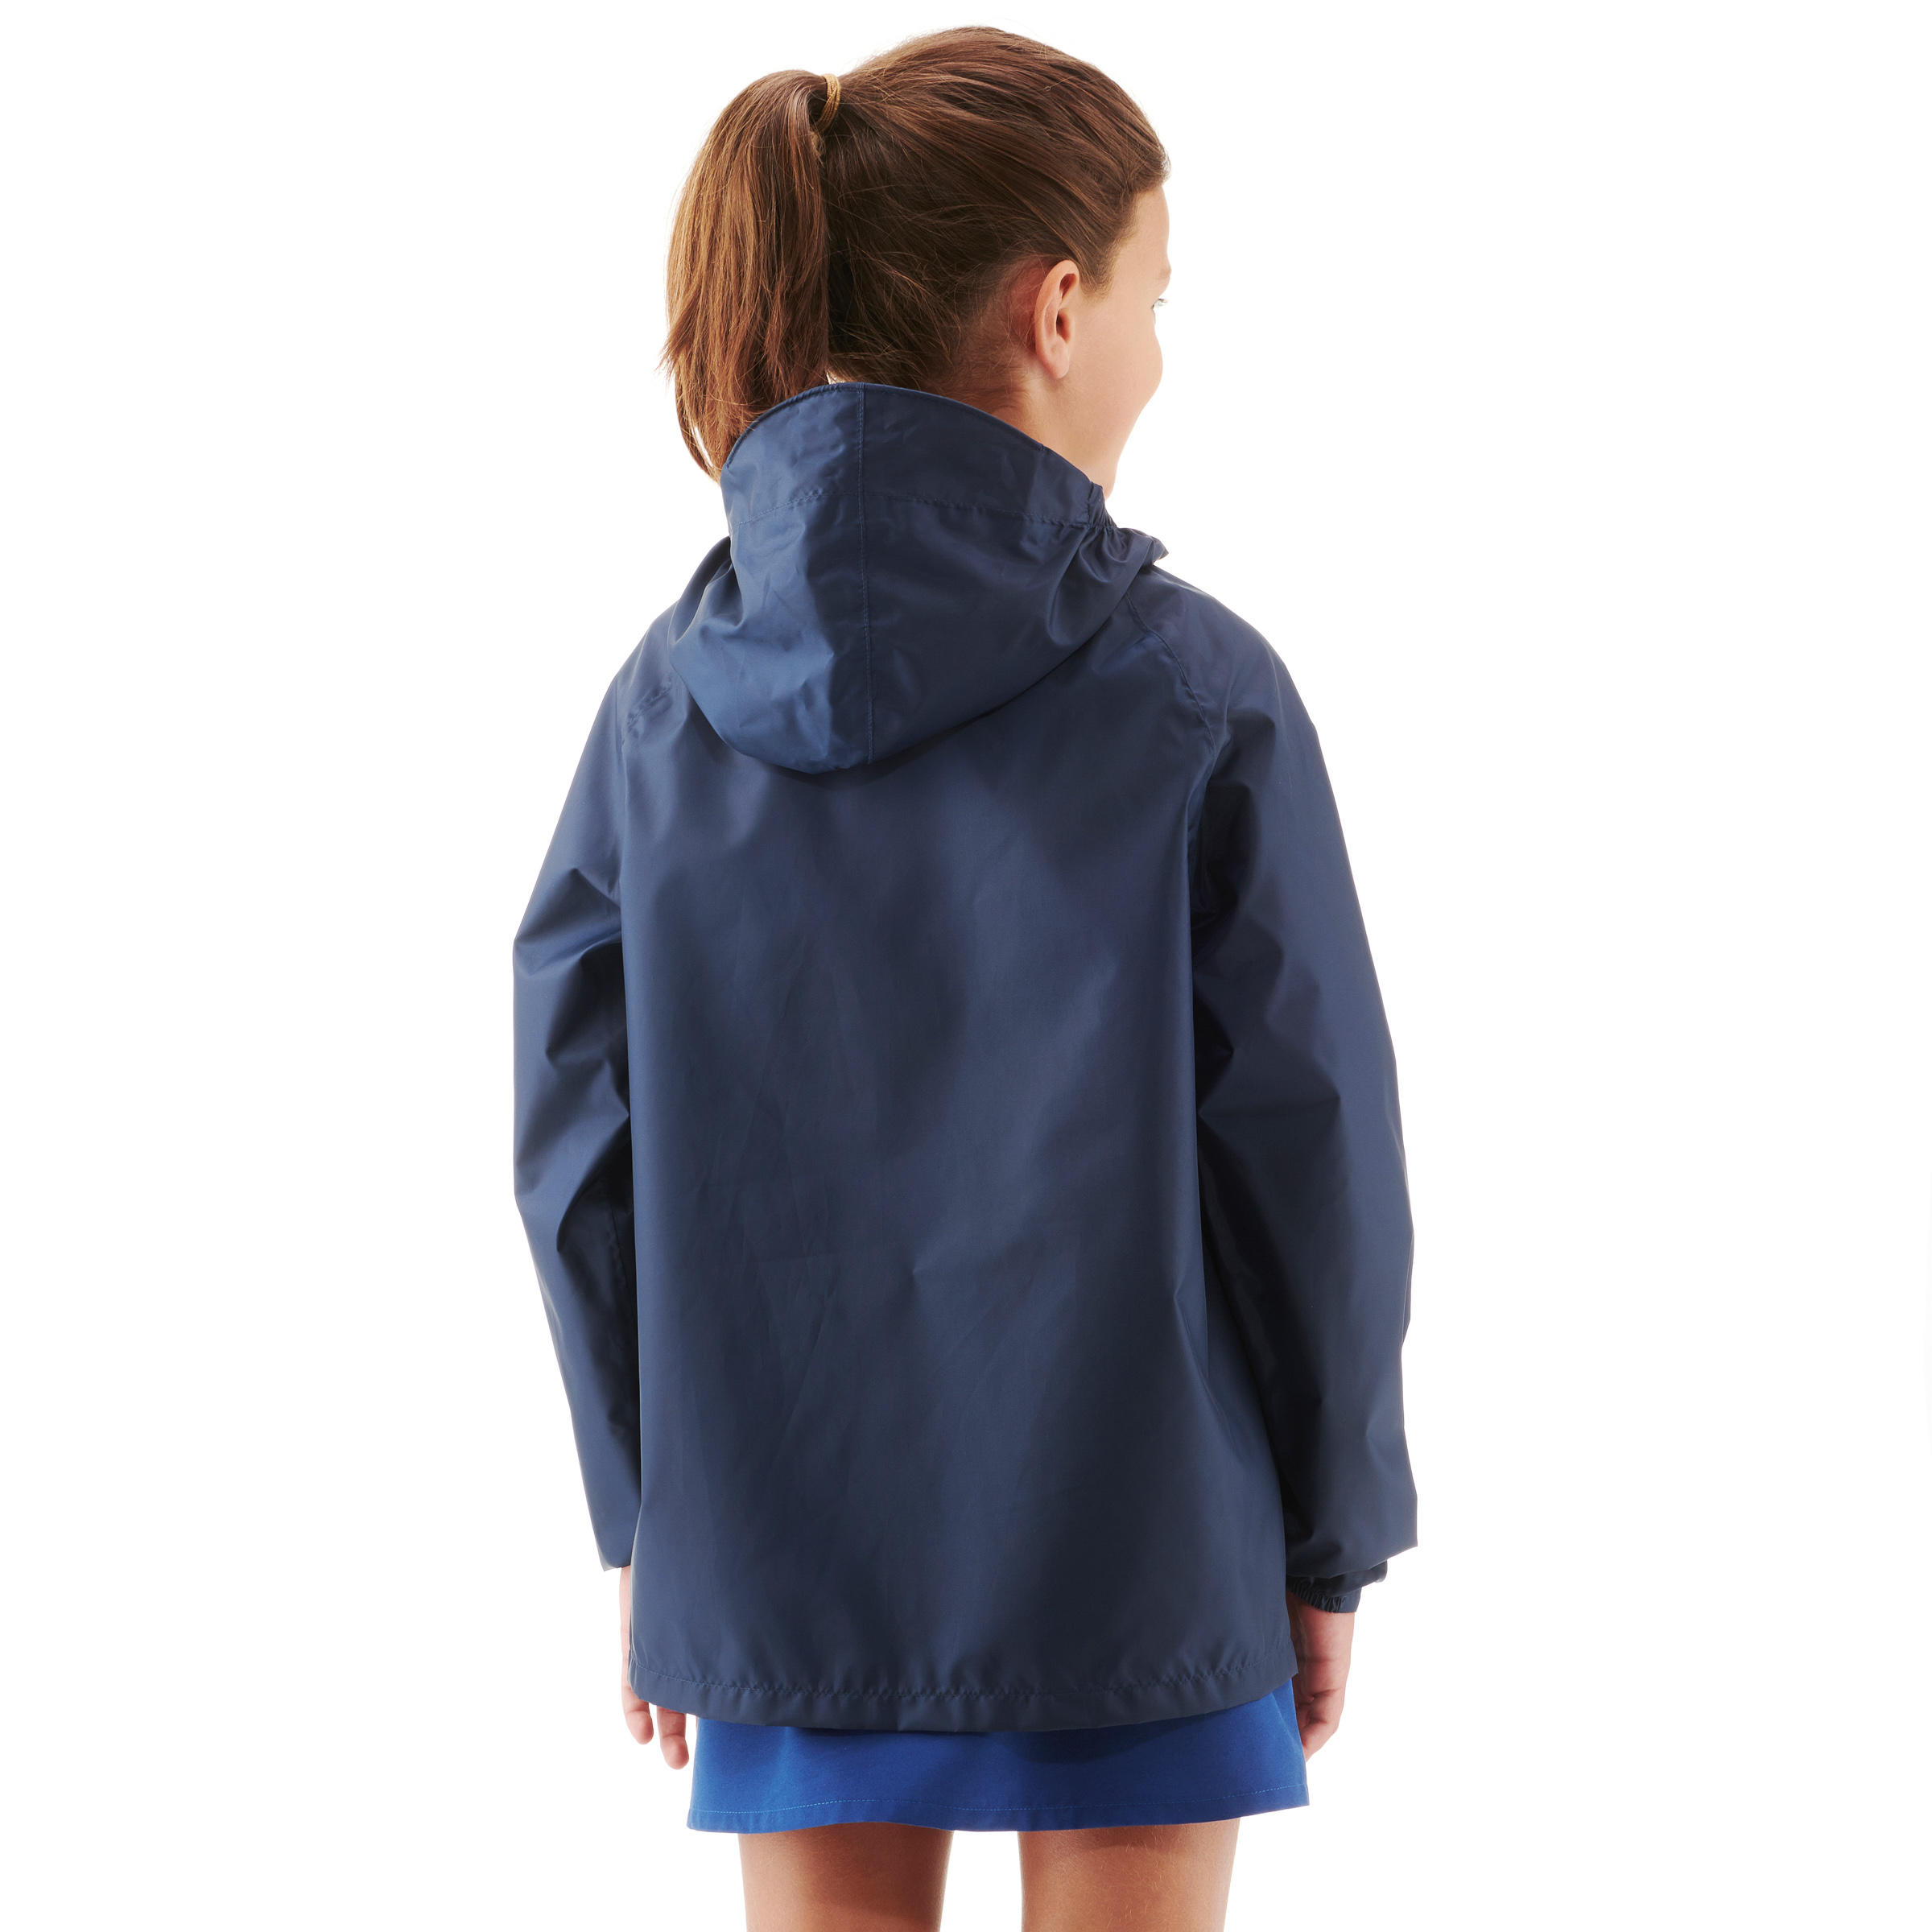 Kids’ Waterproof Winter Jacket - MH 100 Navy Blue/Pink - QUECHUA